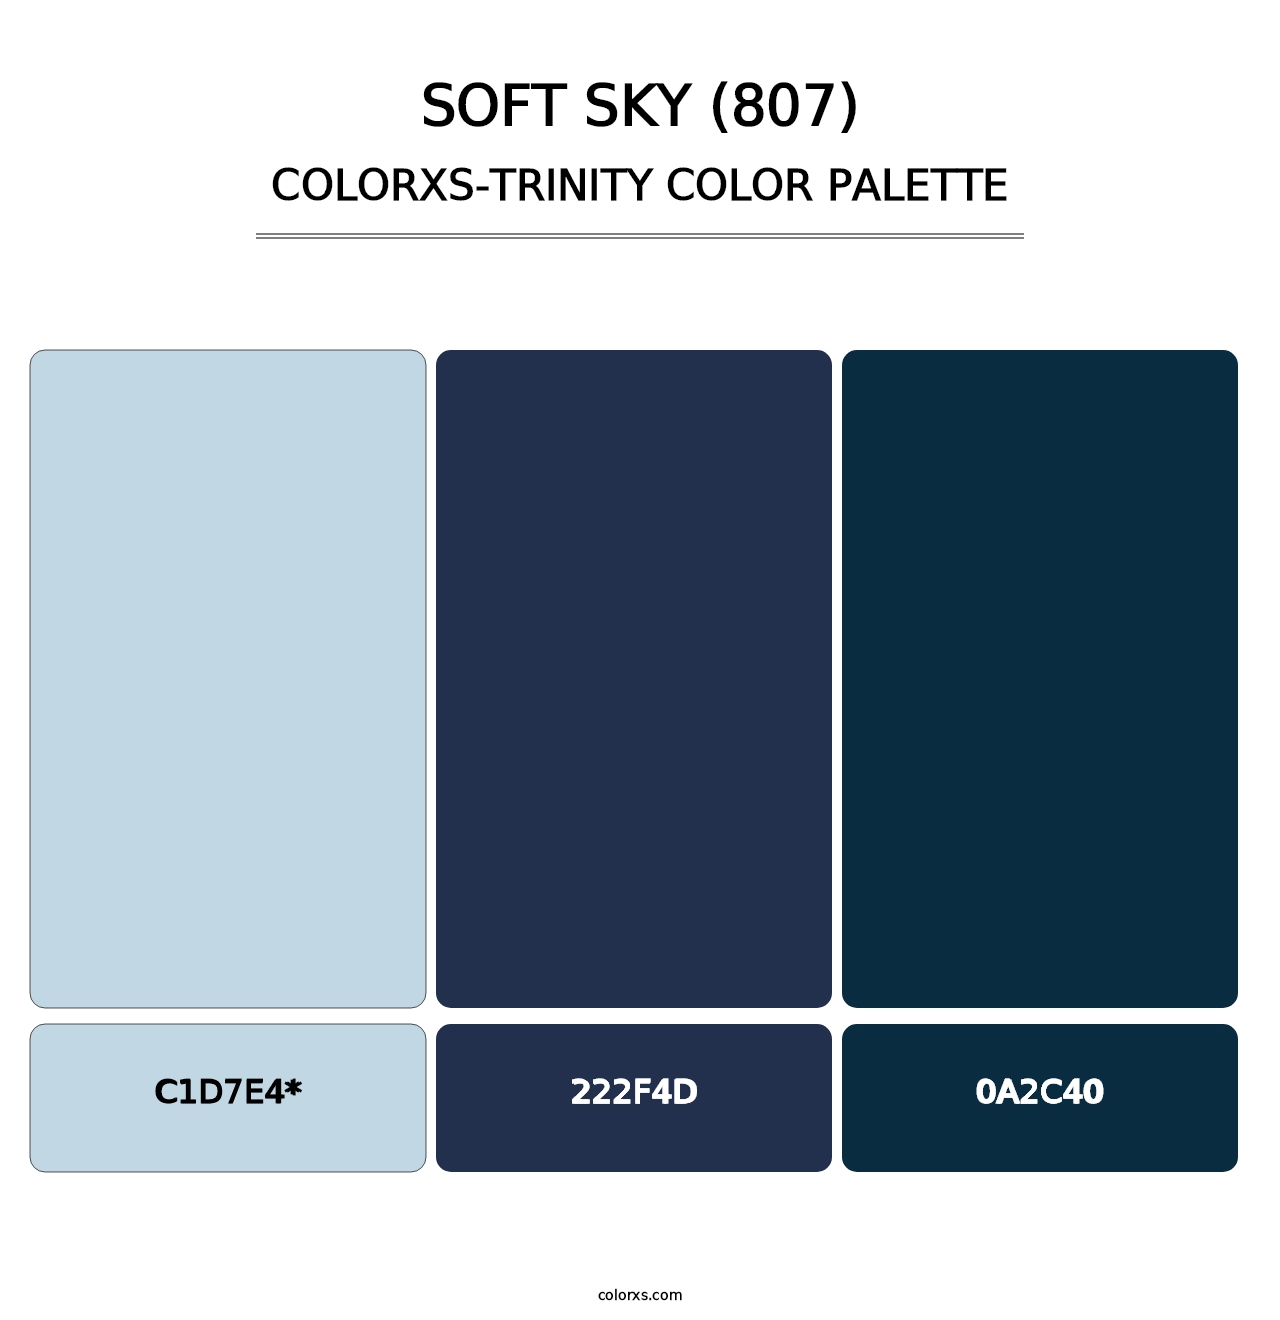 Soft Sky (807) - Colorxs Trinity Palette